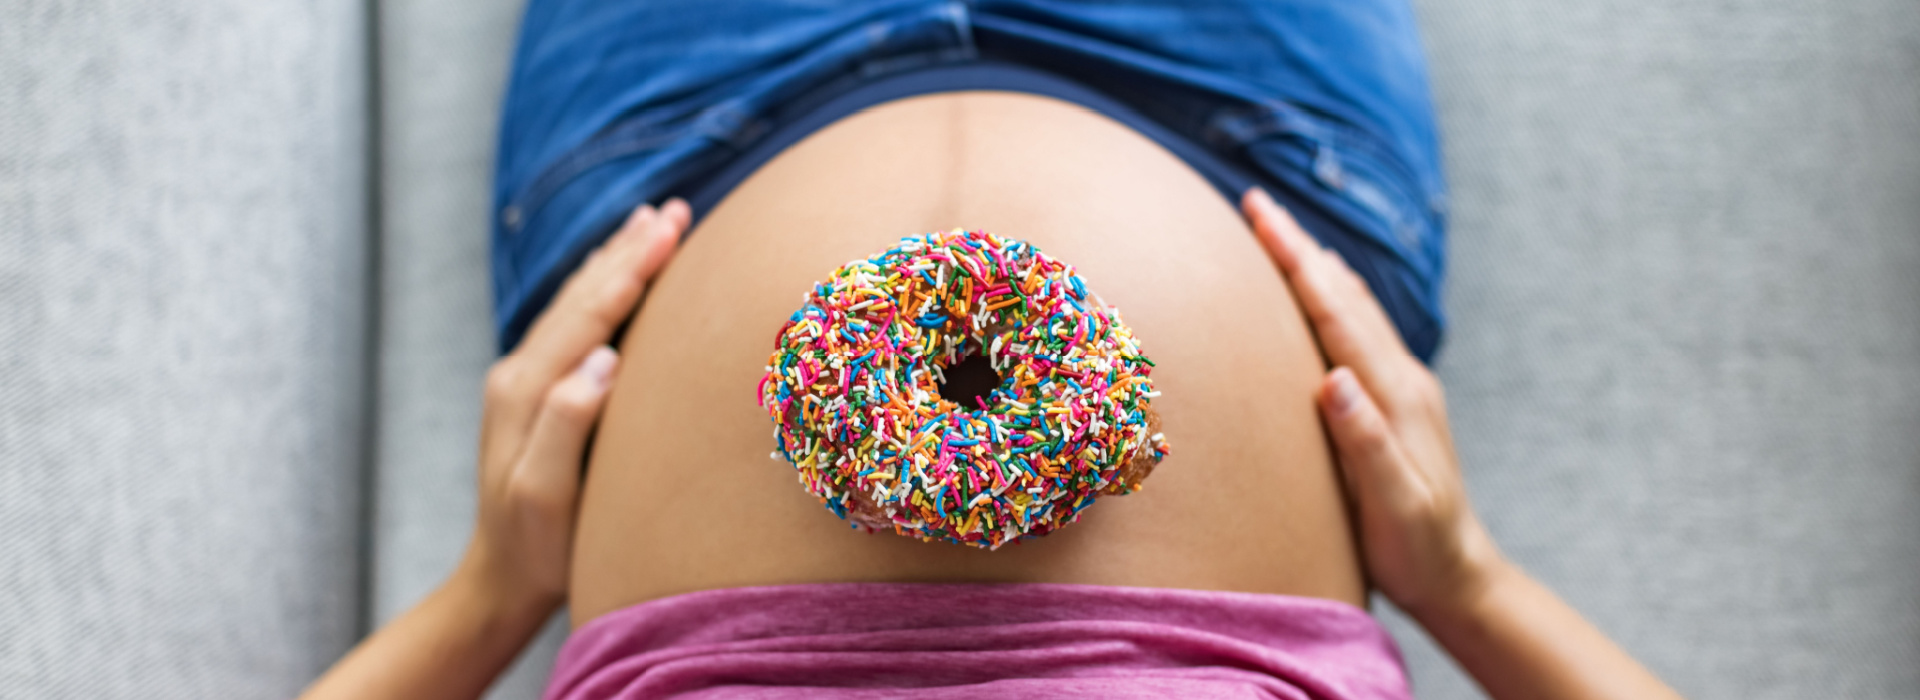 Gestacijski dijabetes ili trudnički šećer